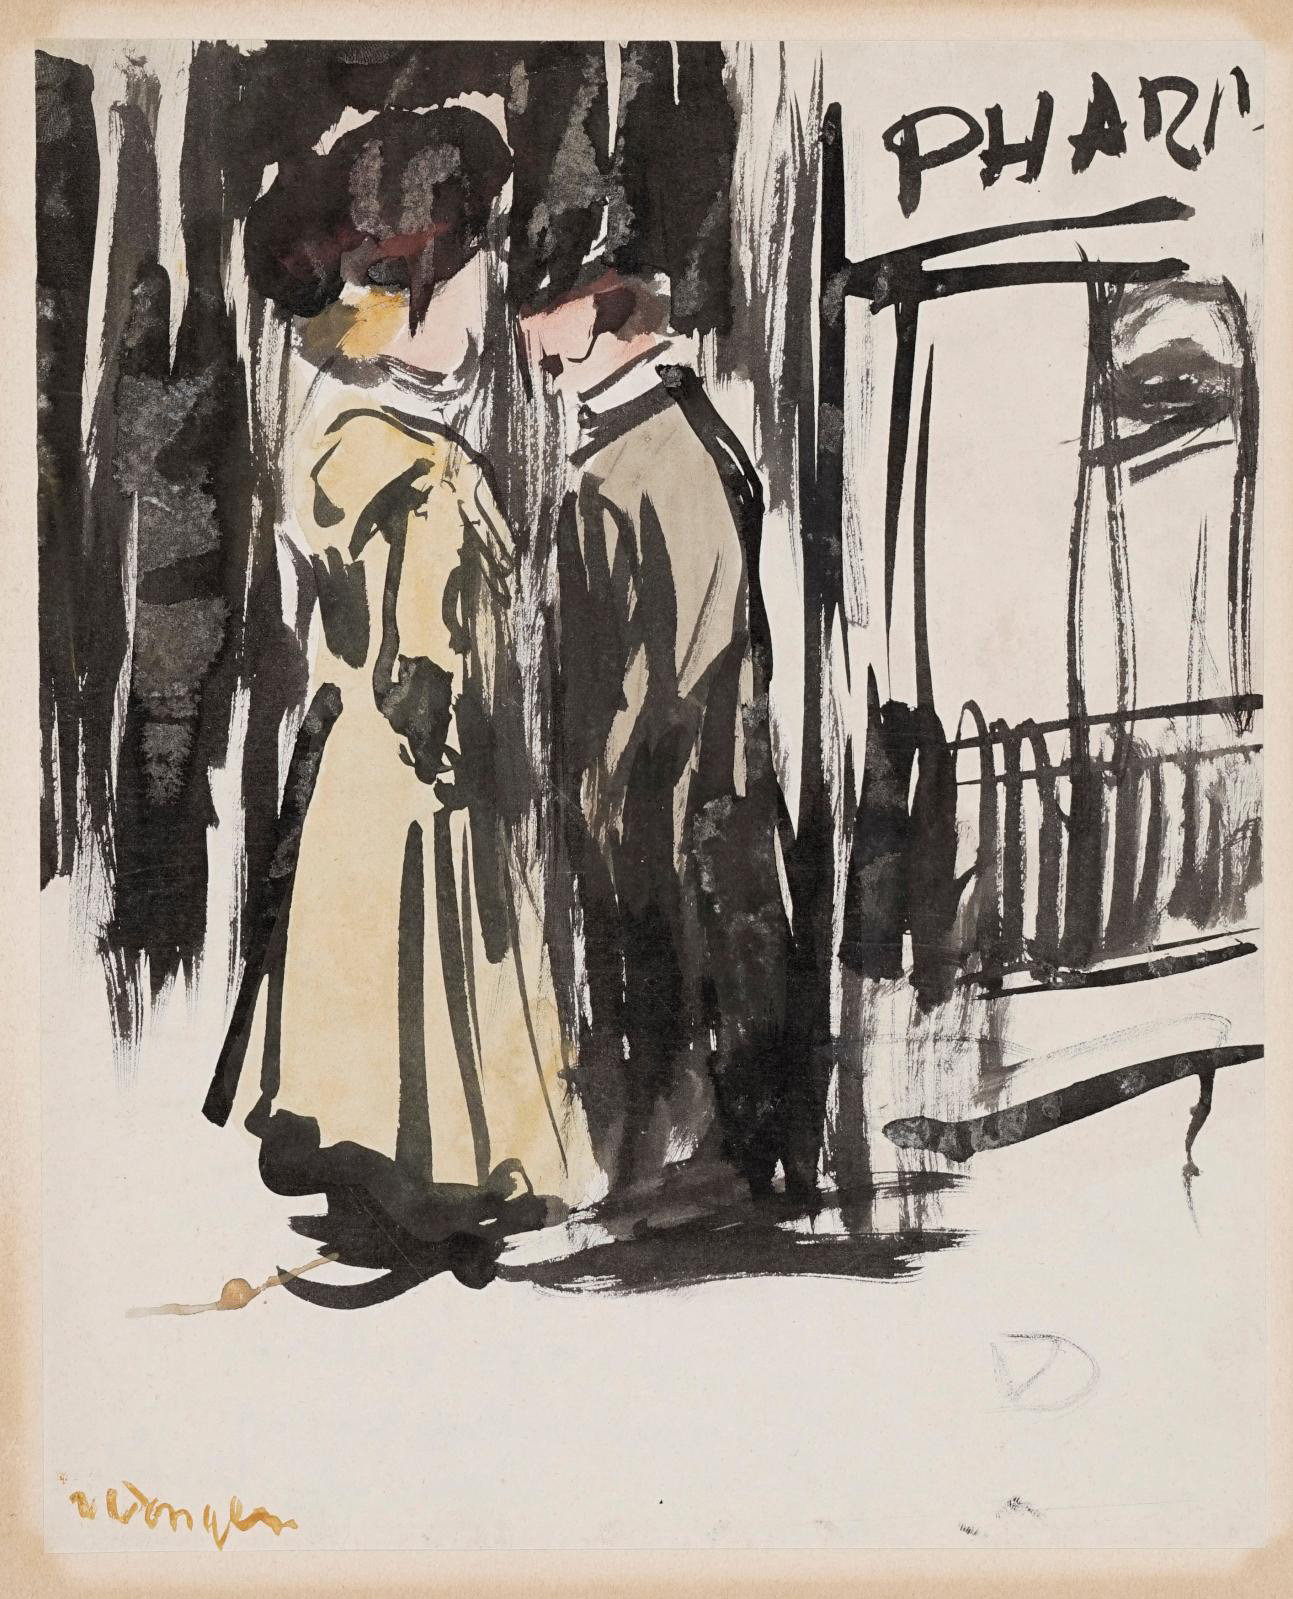 Kees Van Dongen (1877-1968), Conversation dans la rue (Conversation in the street), c. 1900, watercolor and black ink wash, 27 x 21.5 cm/1